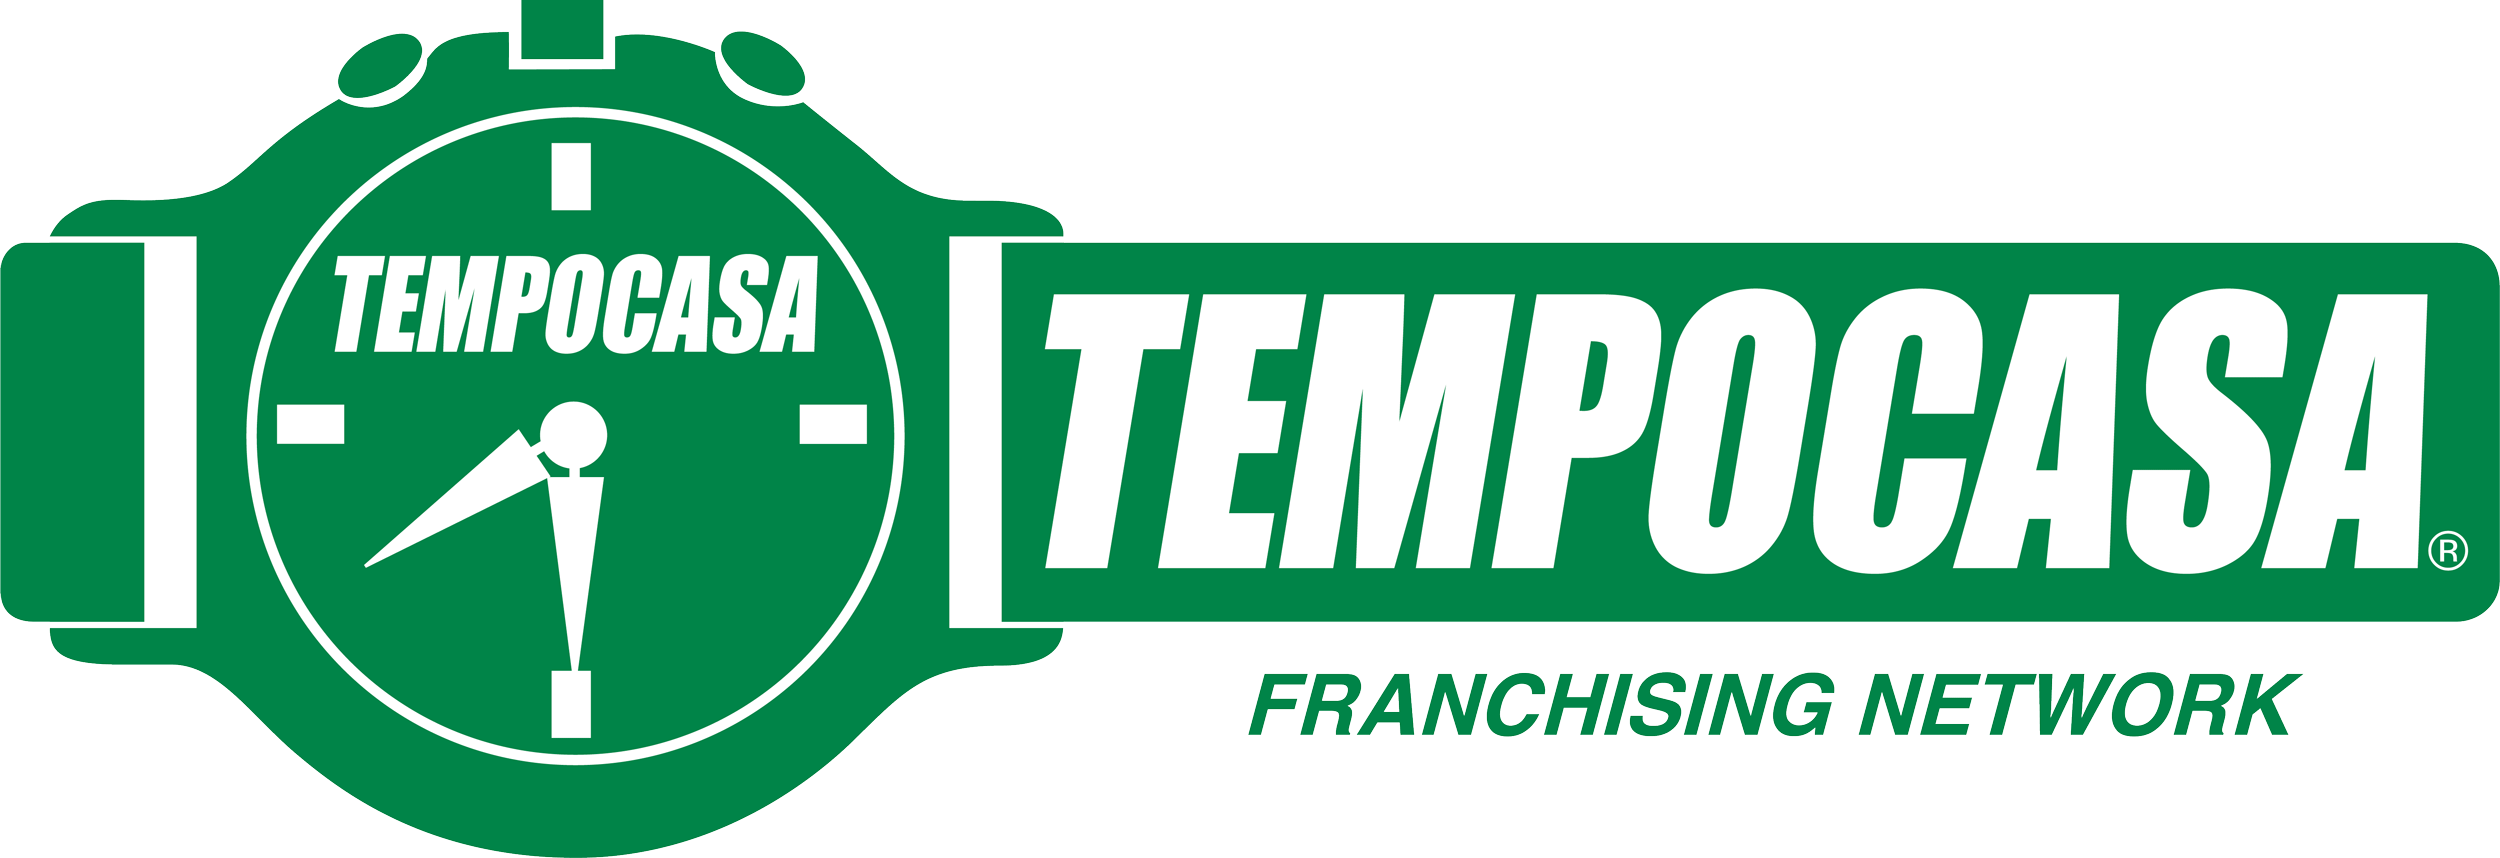 Cuneo - Tempocasa